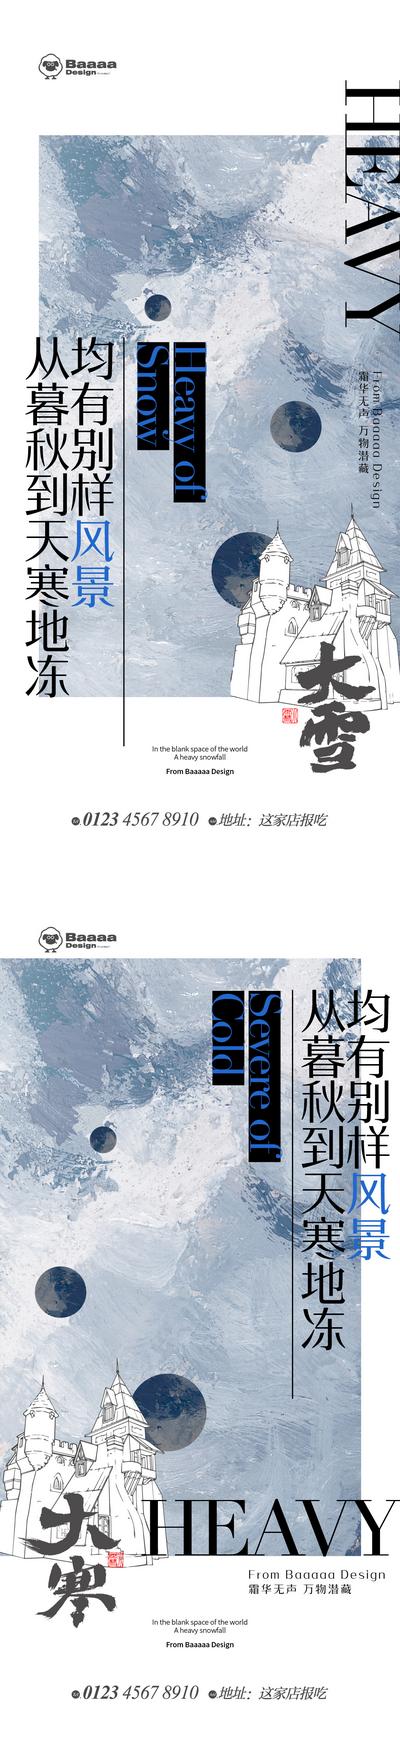 南门网 广告 海报 节气 大雪 大寒 冬天 油画 花园 版式 简约 排版 刷屏 铺排 传统节日